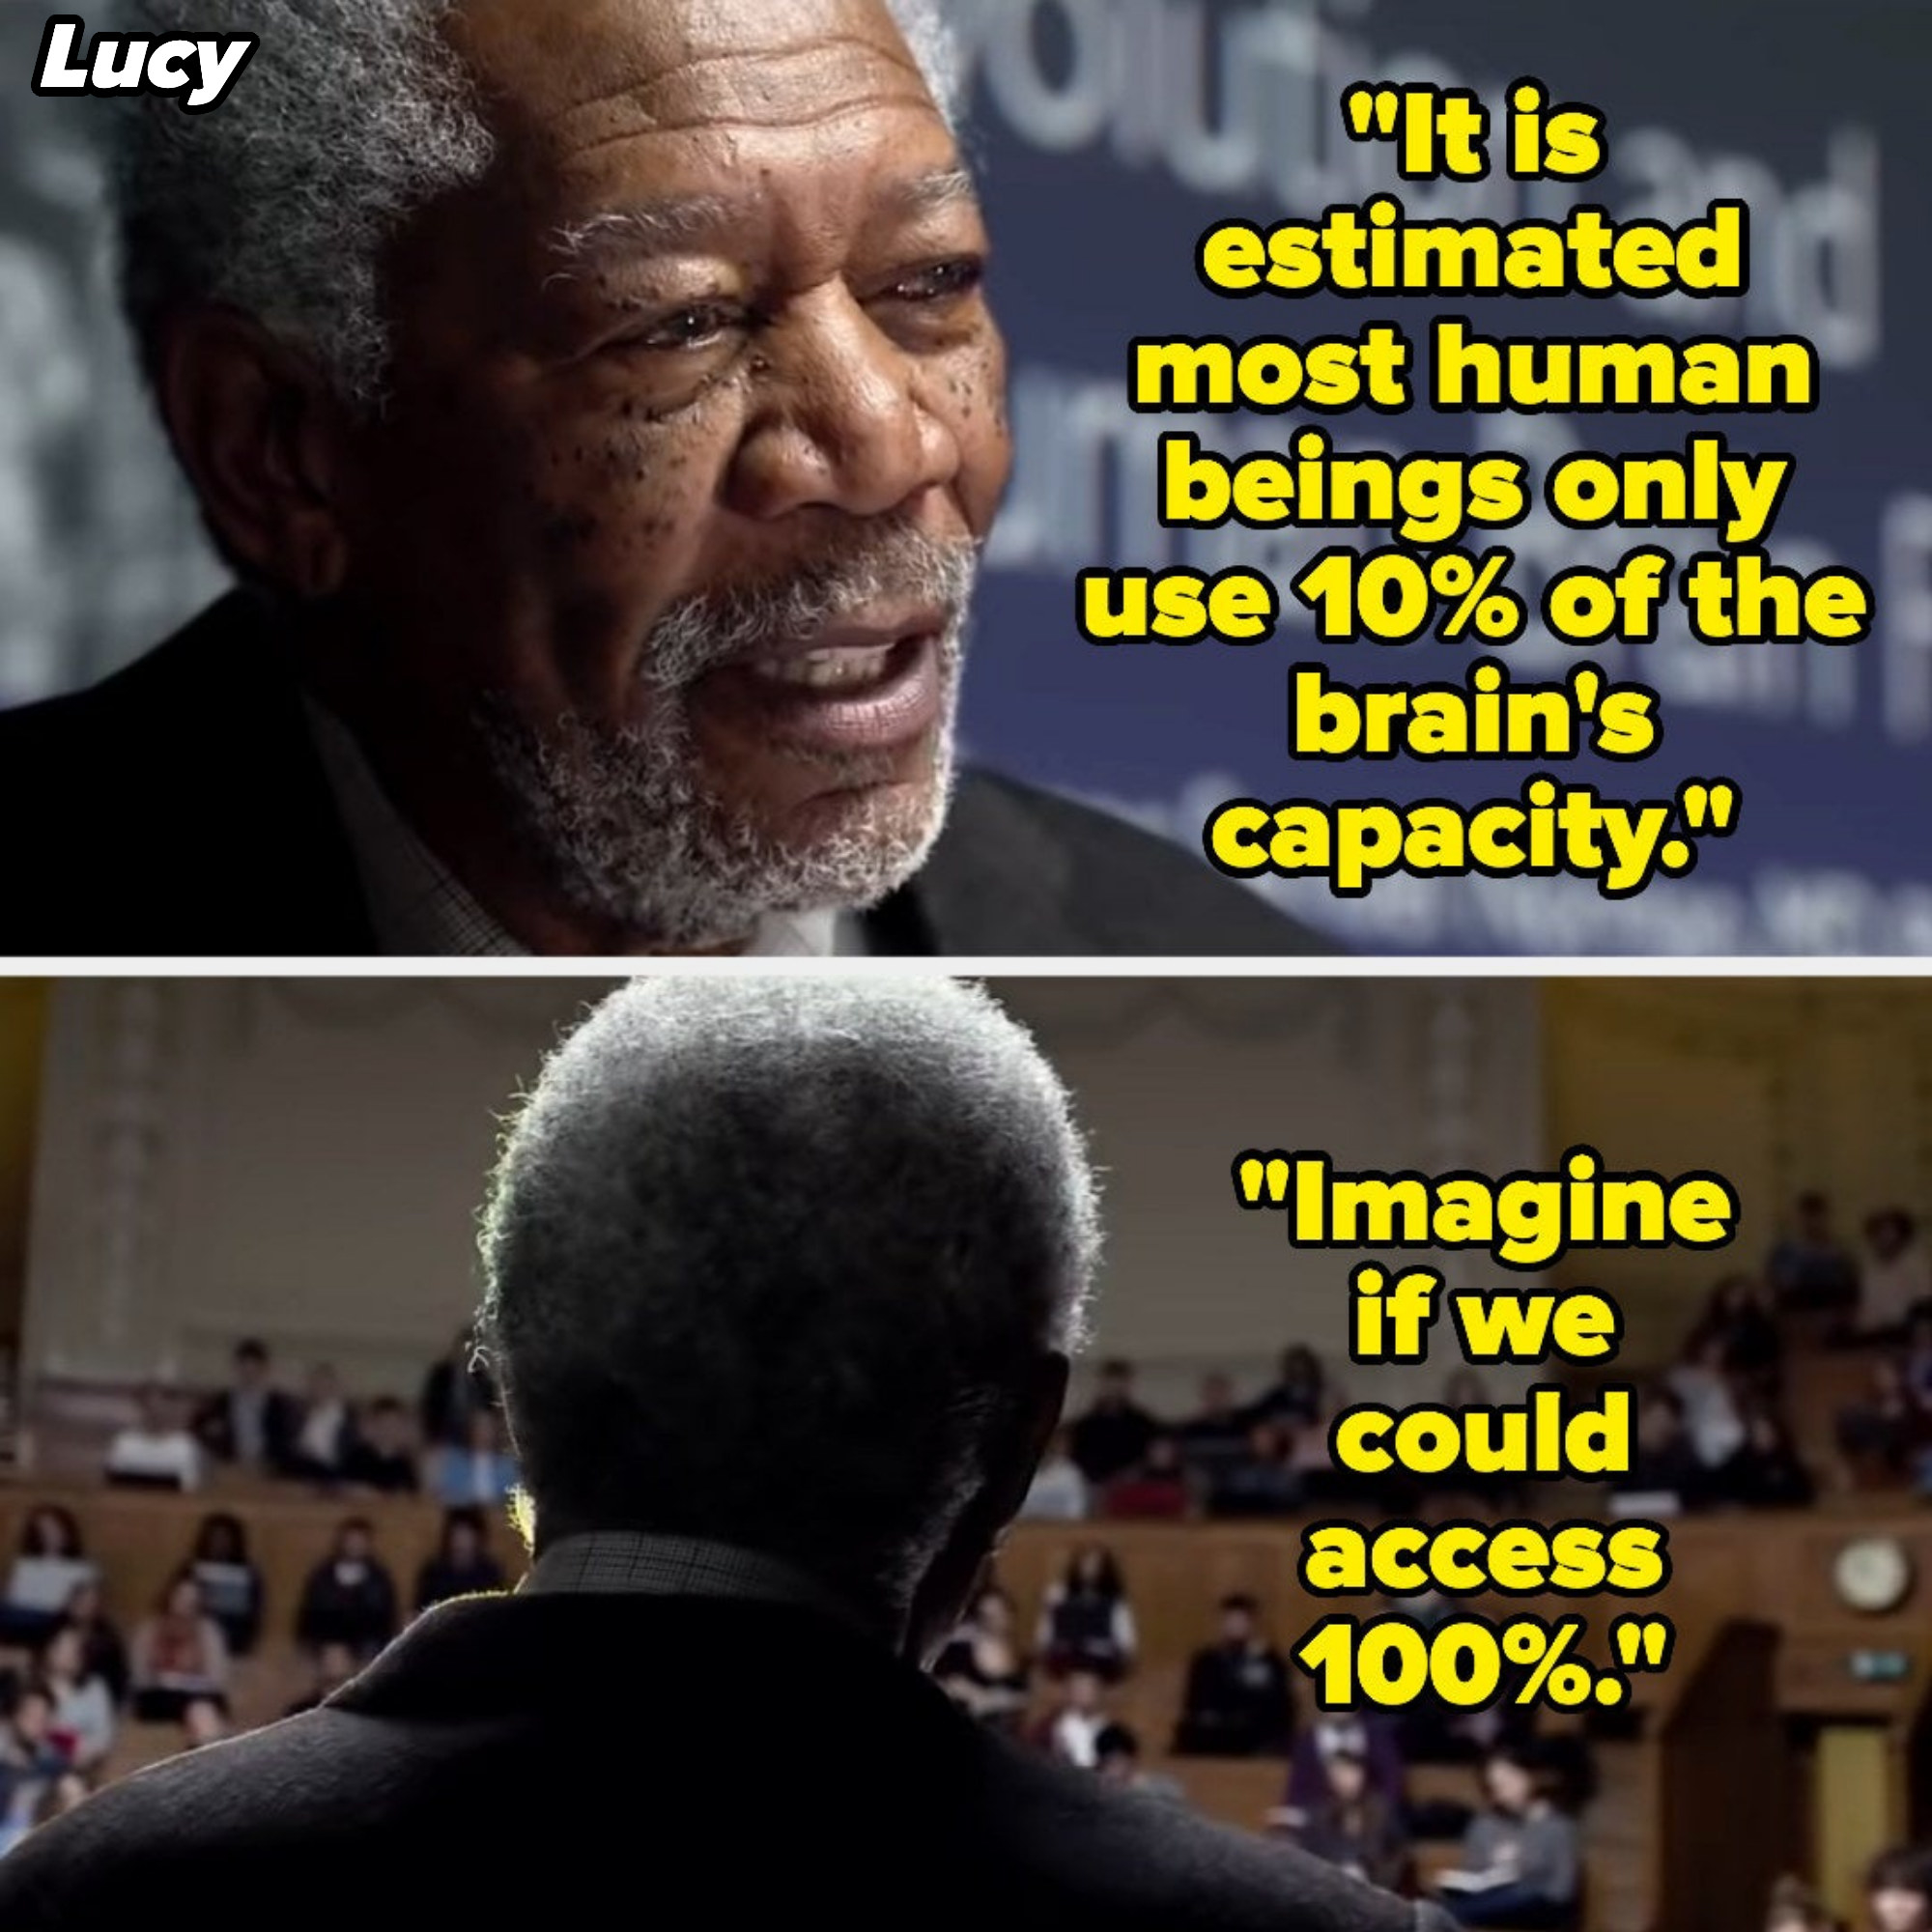 &quot;Imagine if we could access 100%&quot;